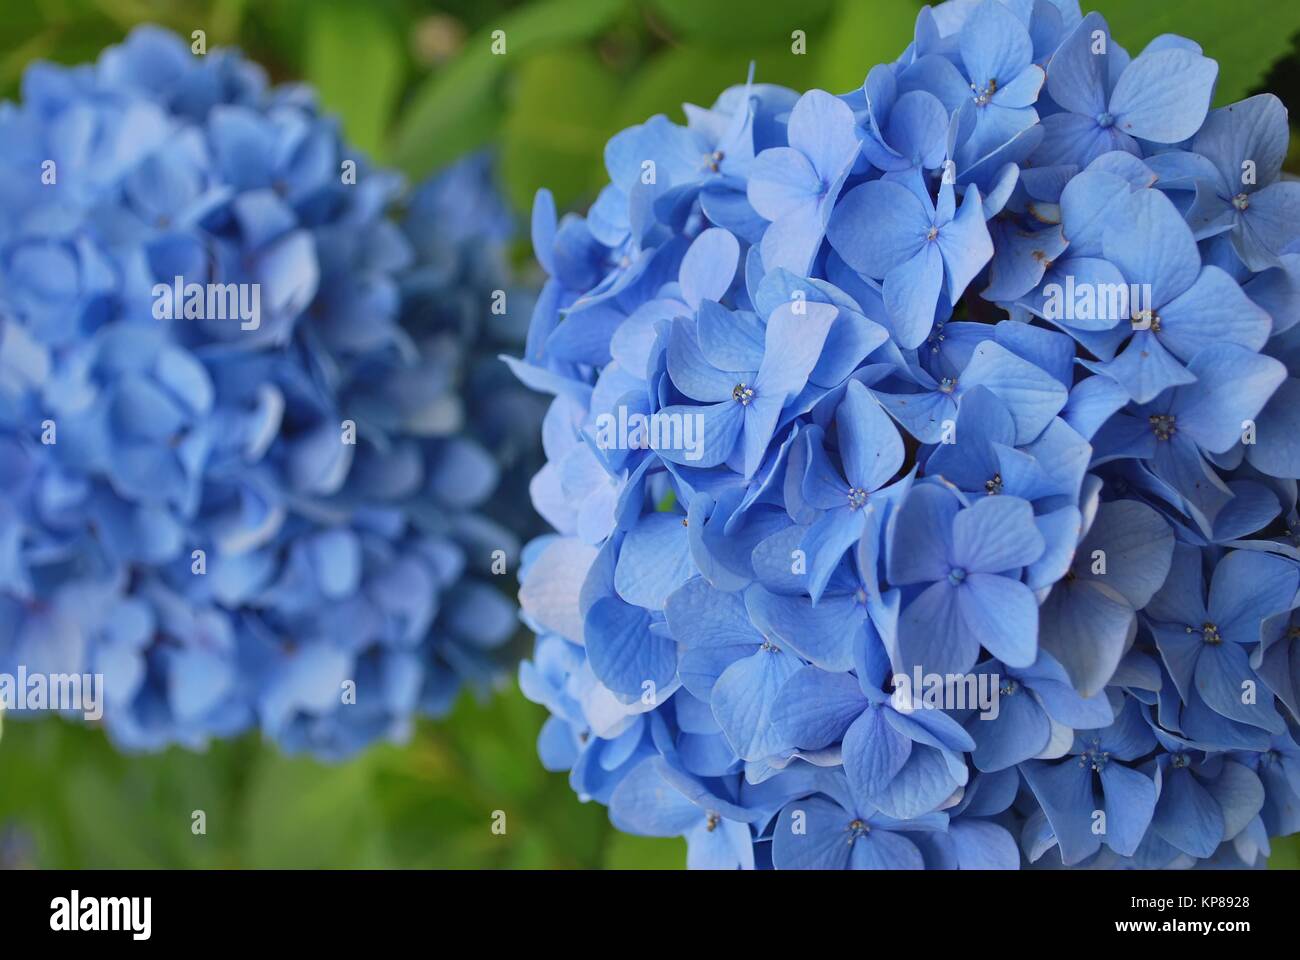 Hortensias colorés en pleine floraison, symbolisant le printemps ou été, pureté, beauté et d'autres concepts abstraits. Prises au Japon. Banque D'Images